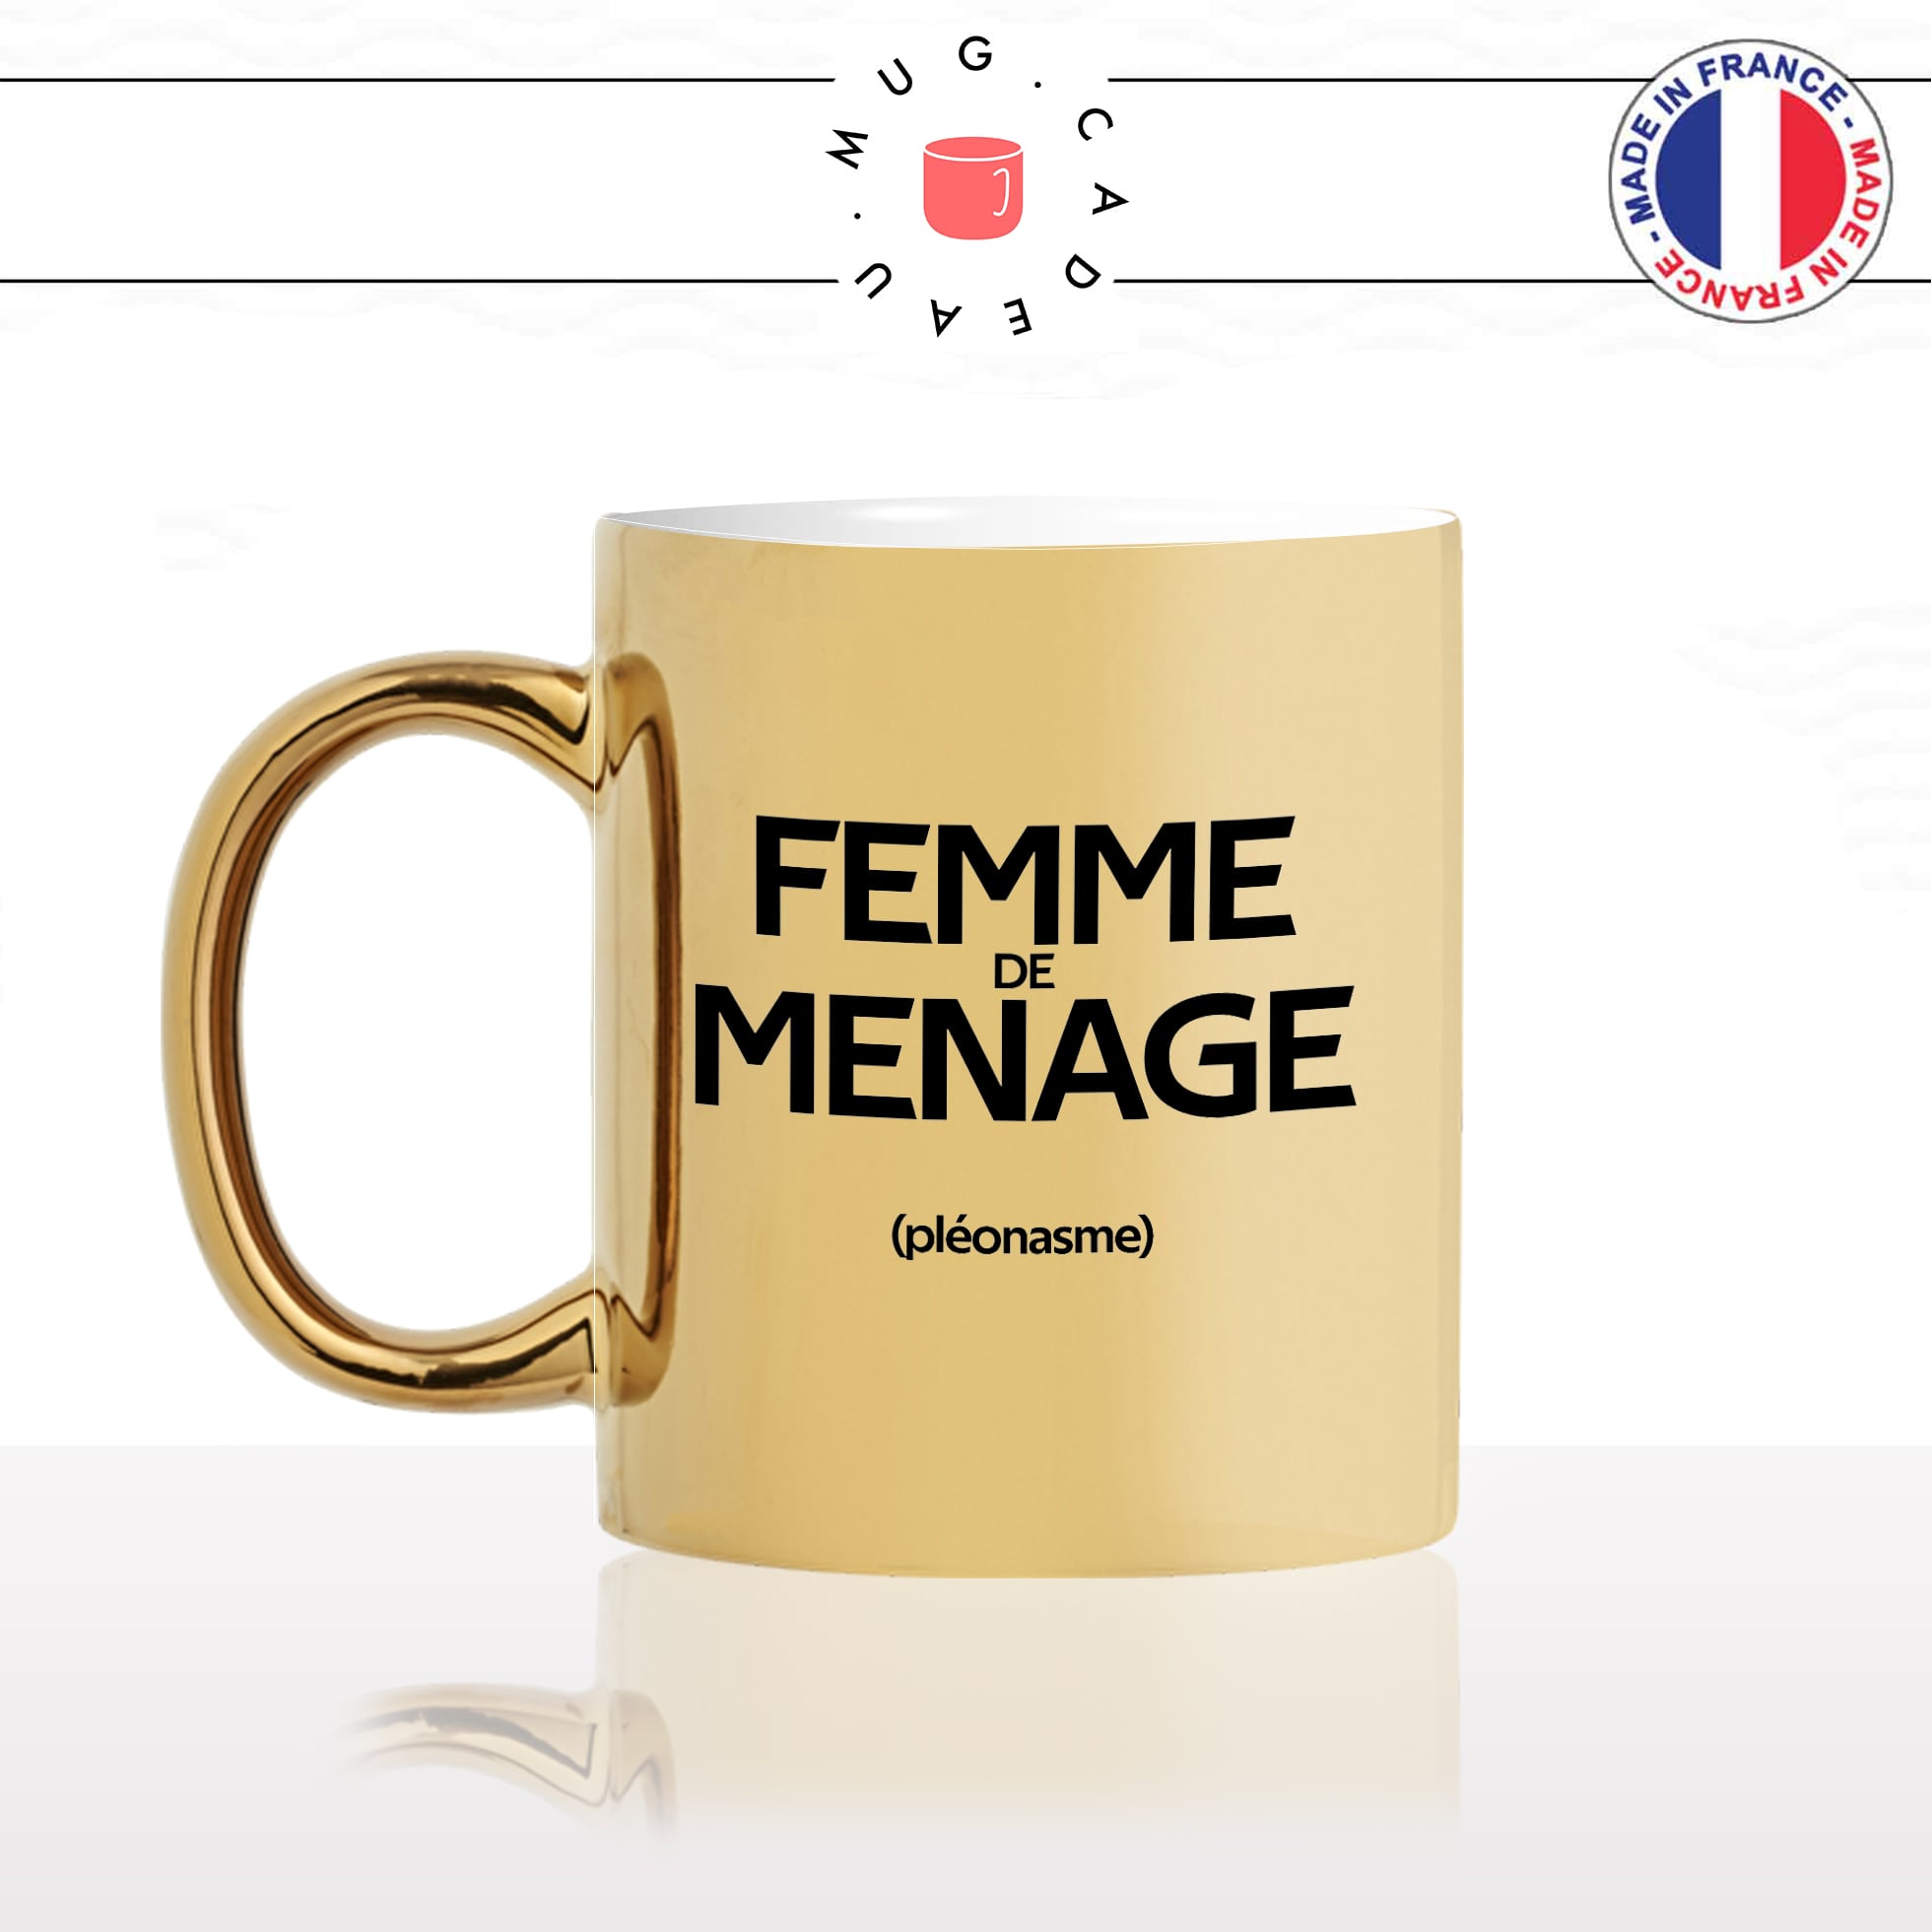 mug-tasse-or-doré-gold-femme-de-ménage-pénible-couple-pléonasme-couzine-synonymes-copine-humour-fun-idée-cadeau-originale-cool-min